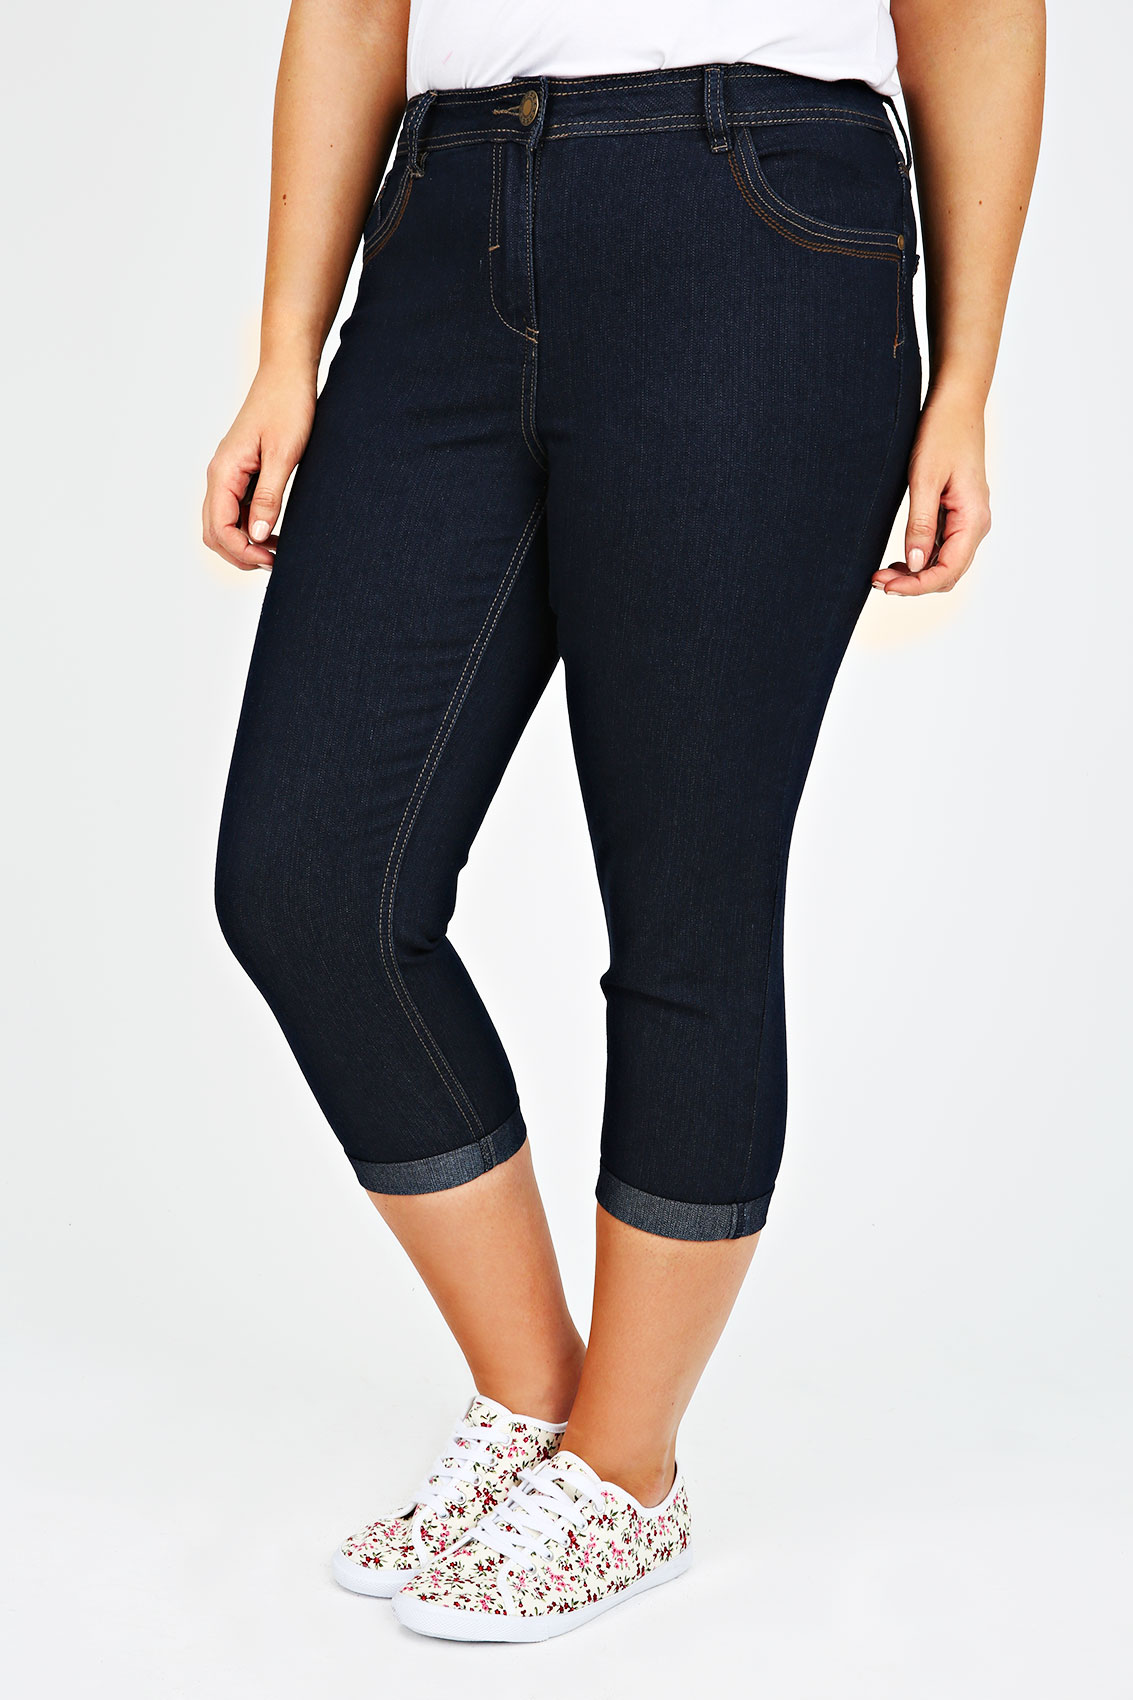 Indigo Denim Crop Jean With Stitch Detail plus Size 14 to 28